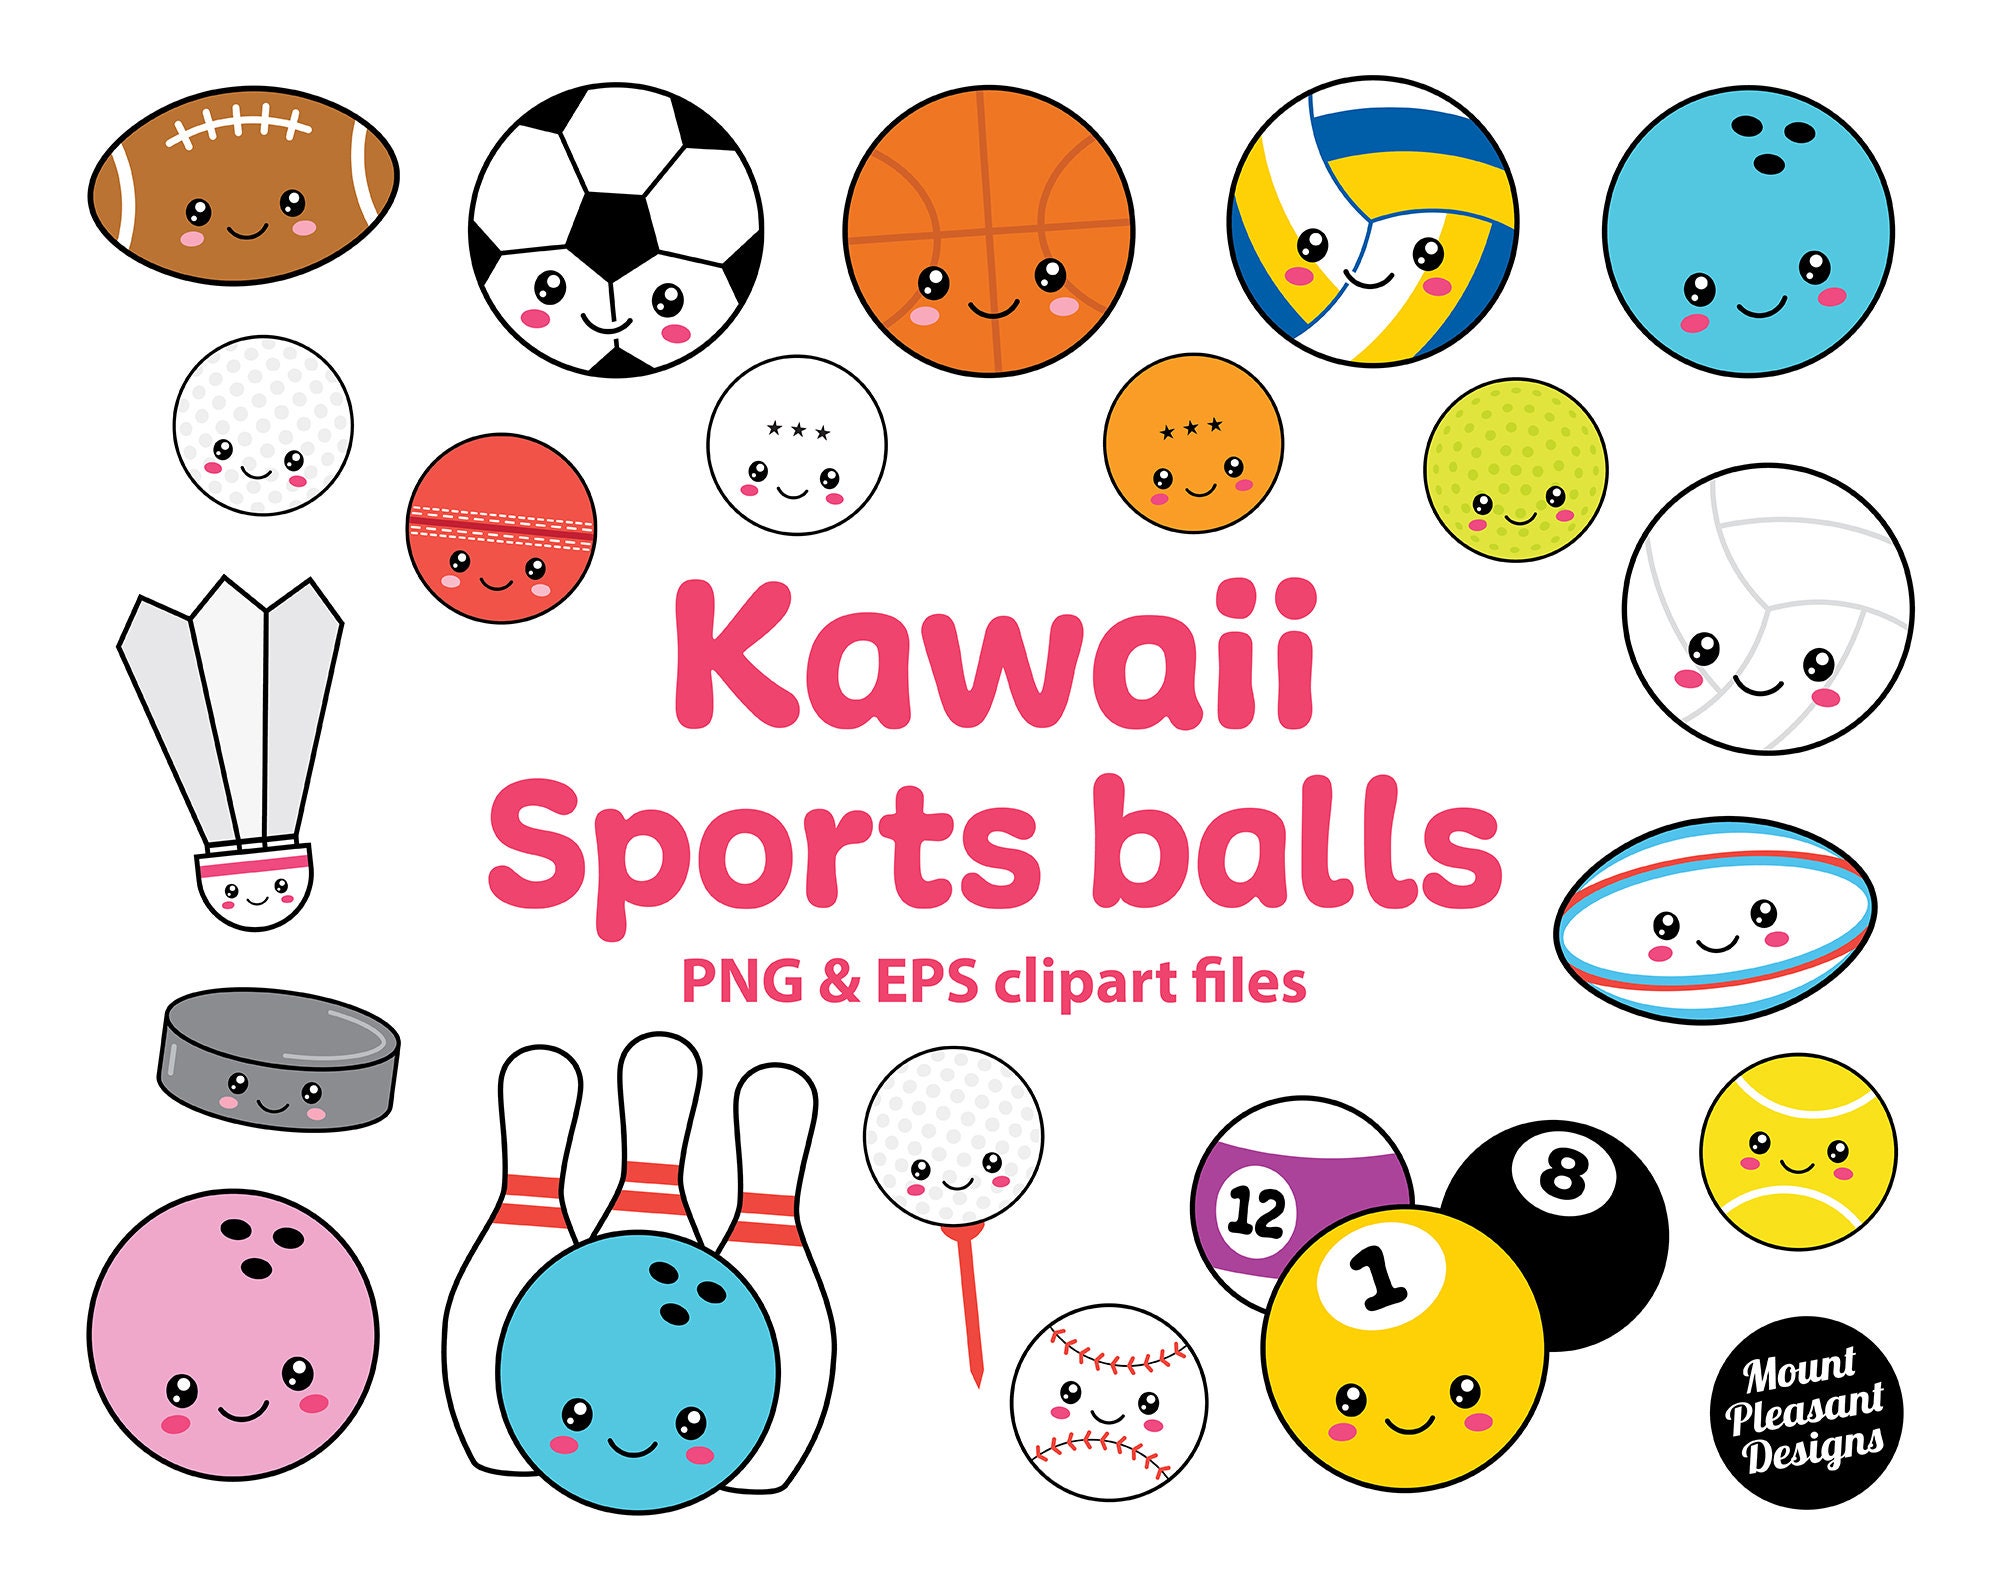 Kawaii Sports Balls Clipart, Cute Cartoon Sports Balls Clip Art, PNG & EPS  Files, Instant Download 